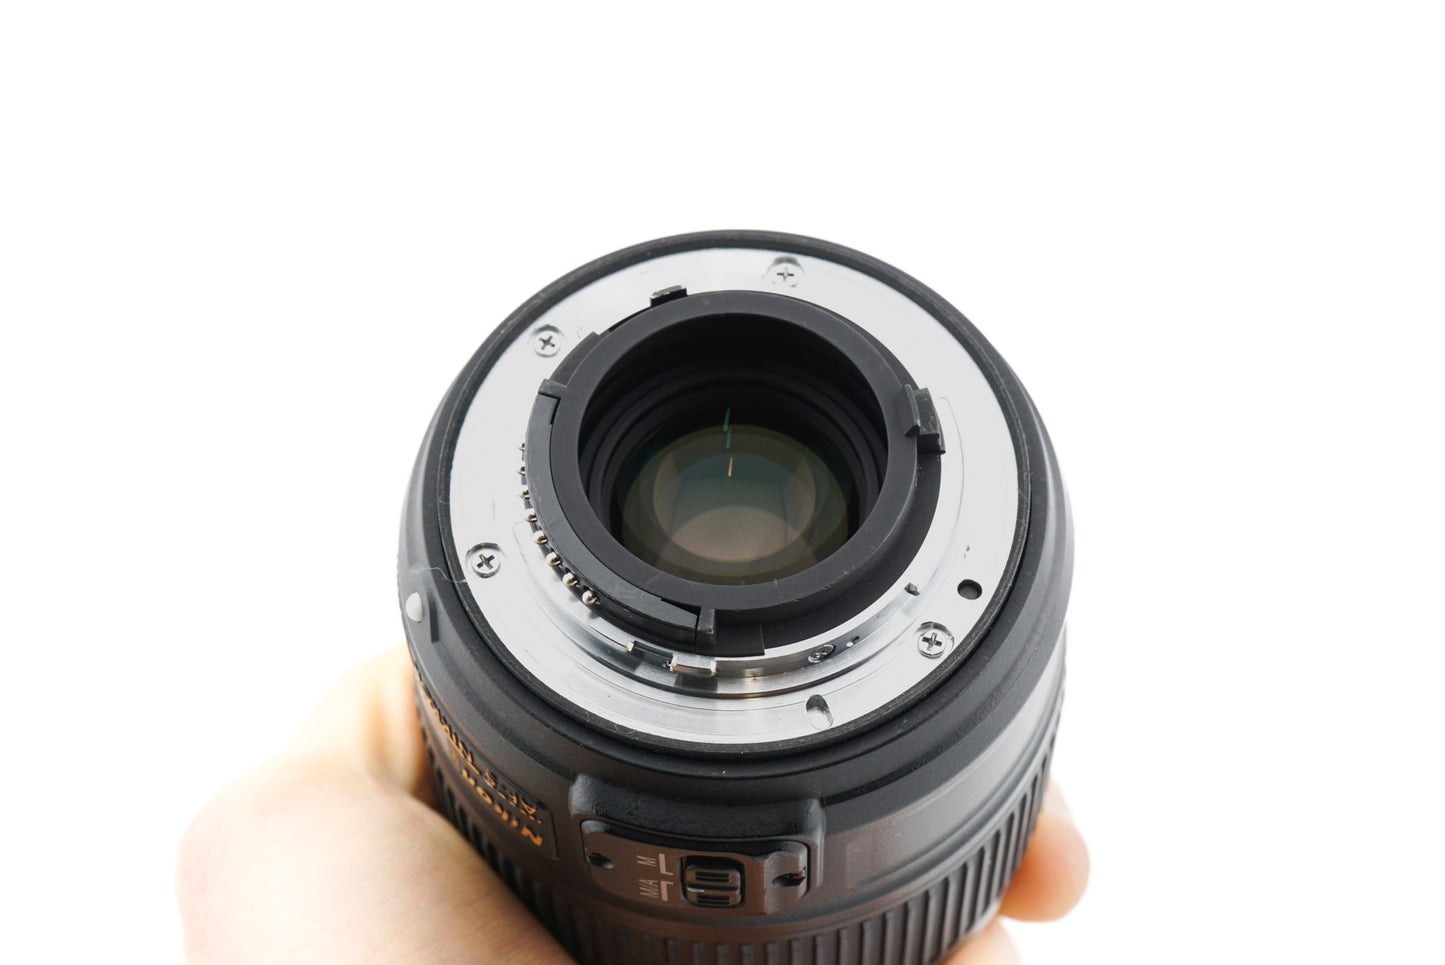 Nikon 35mm f1.8 G ED AF-S Nikkor